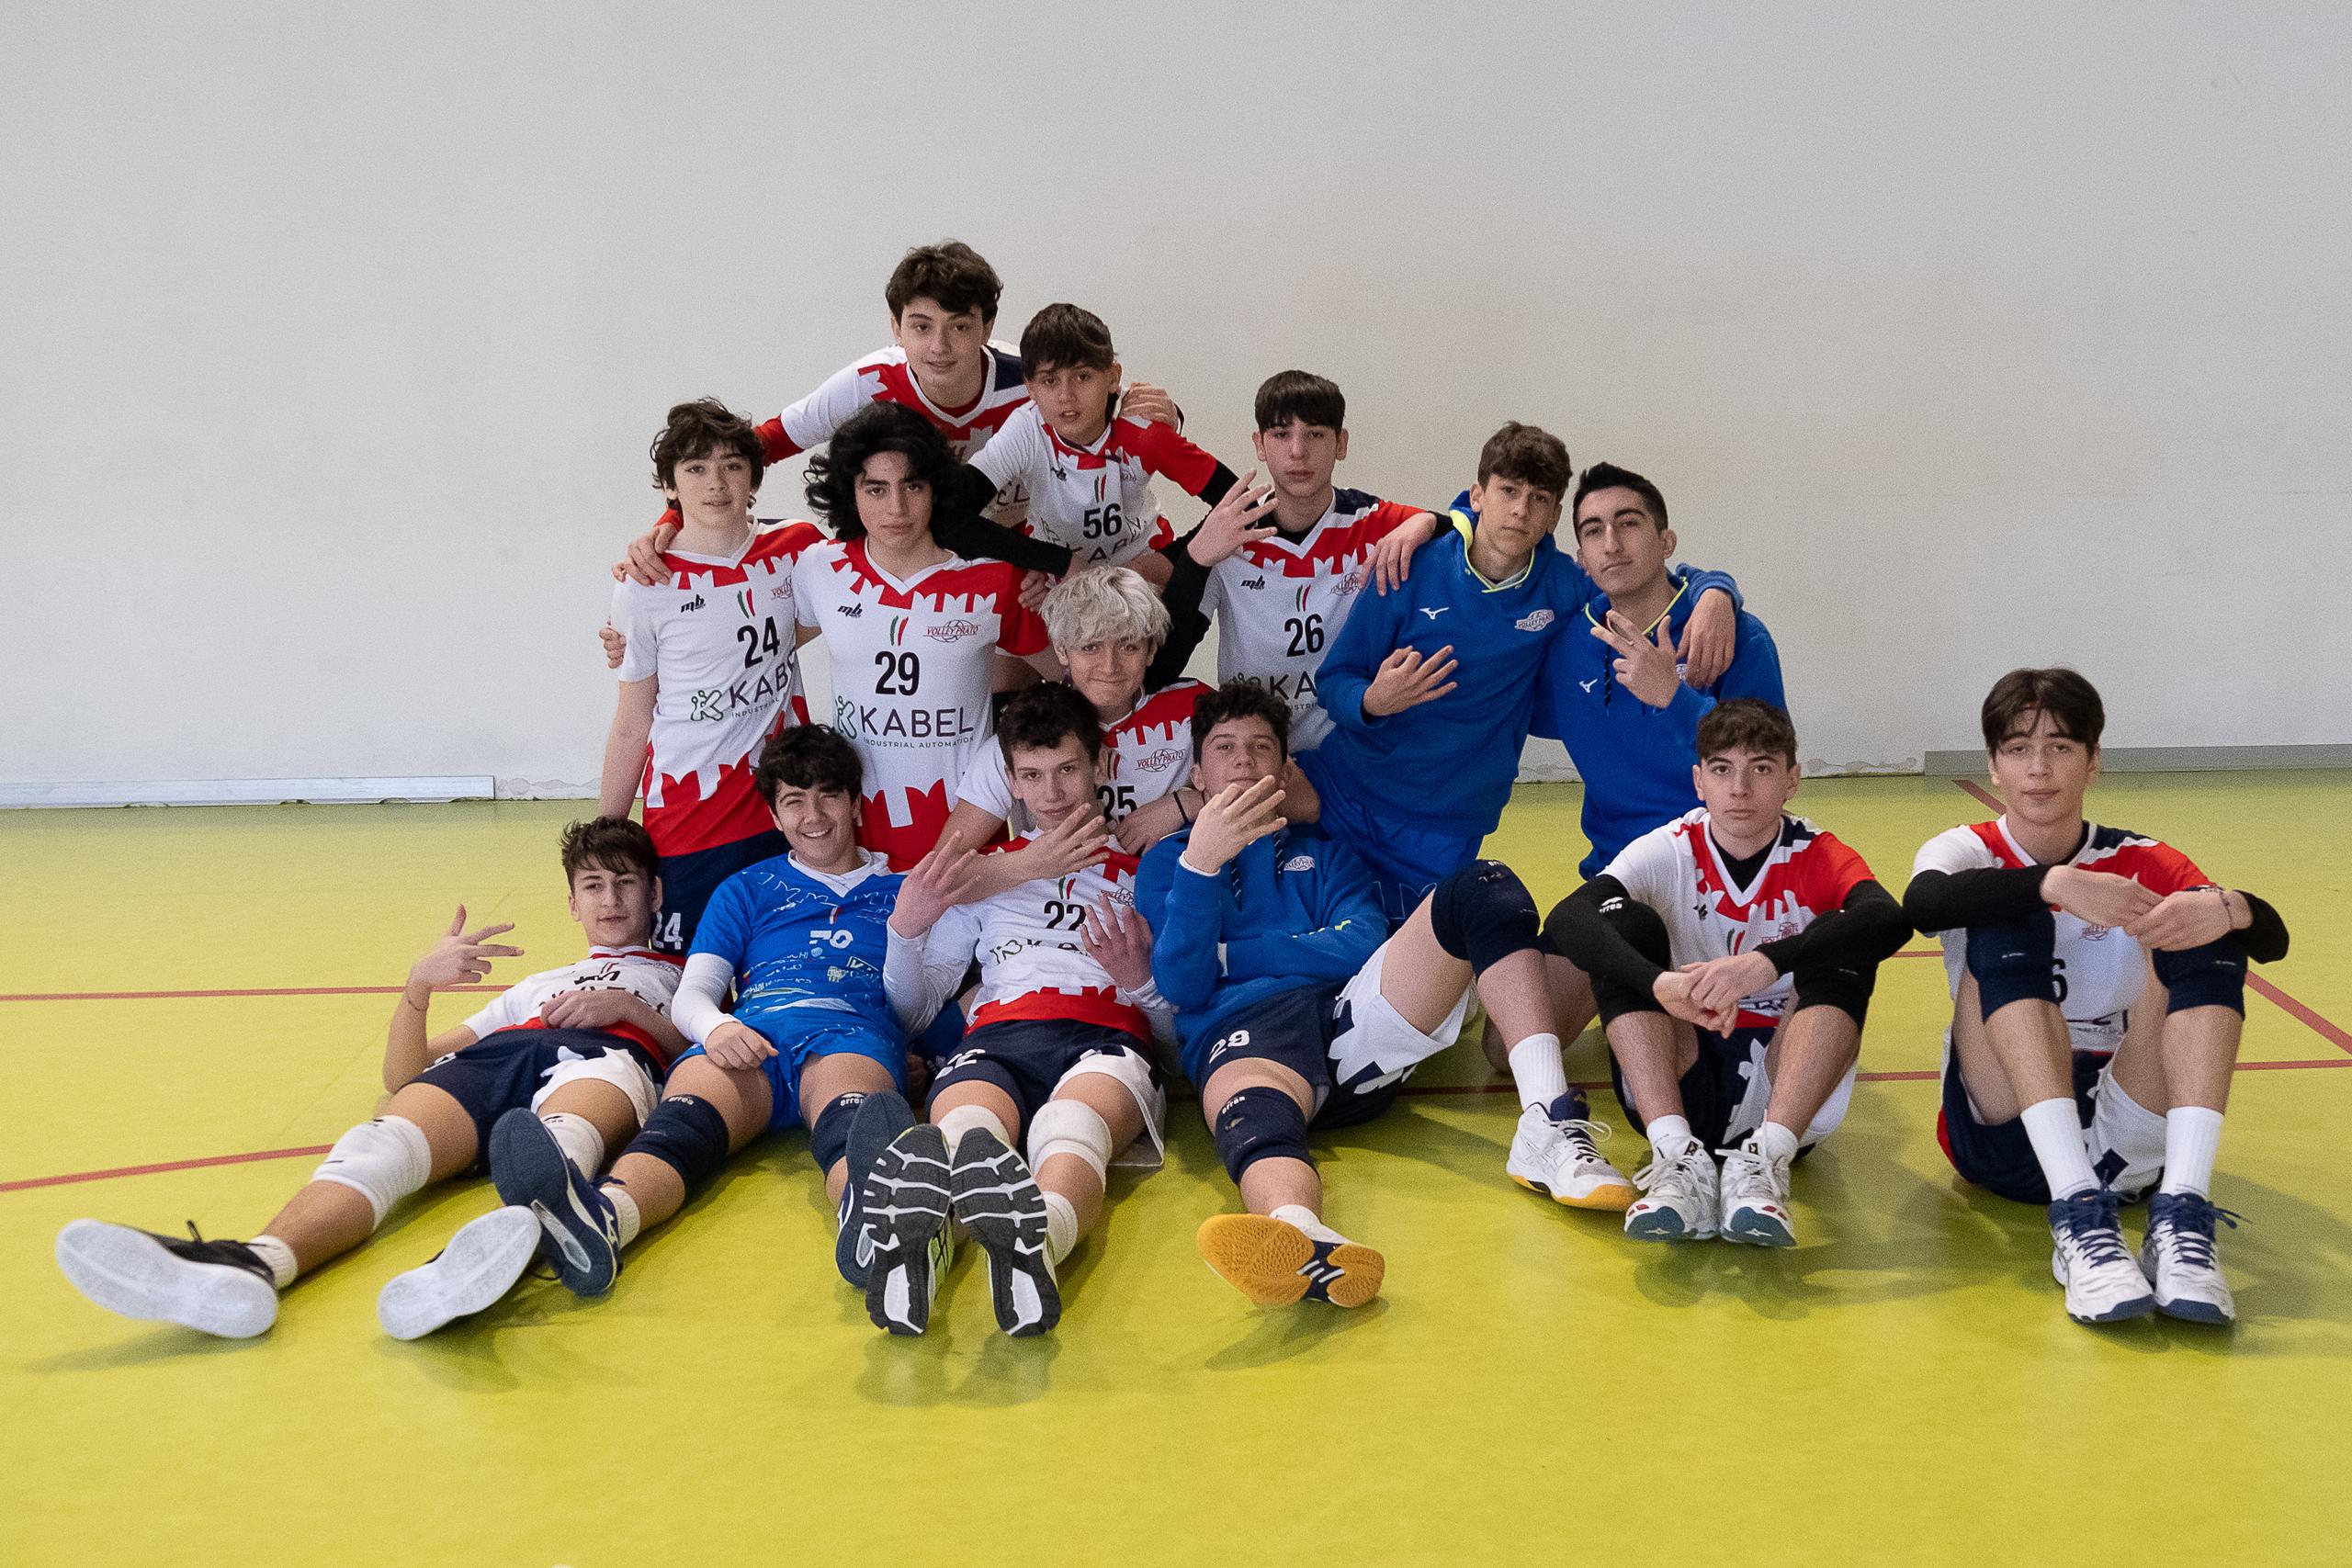 PlayOff U15 - Quarti di finale: Volley Prato Senior supera la Sales e accede alle semifinali